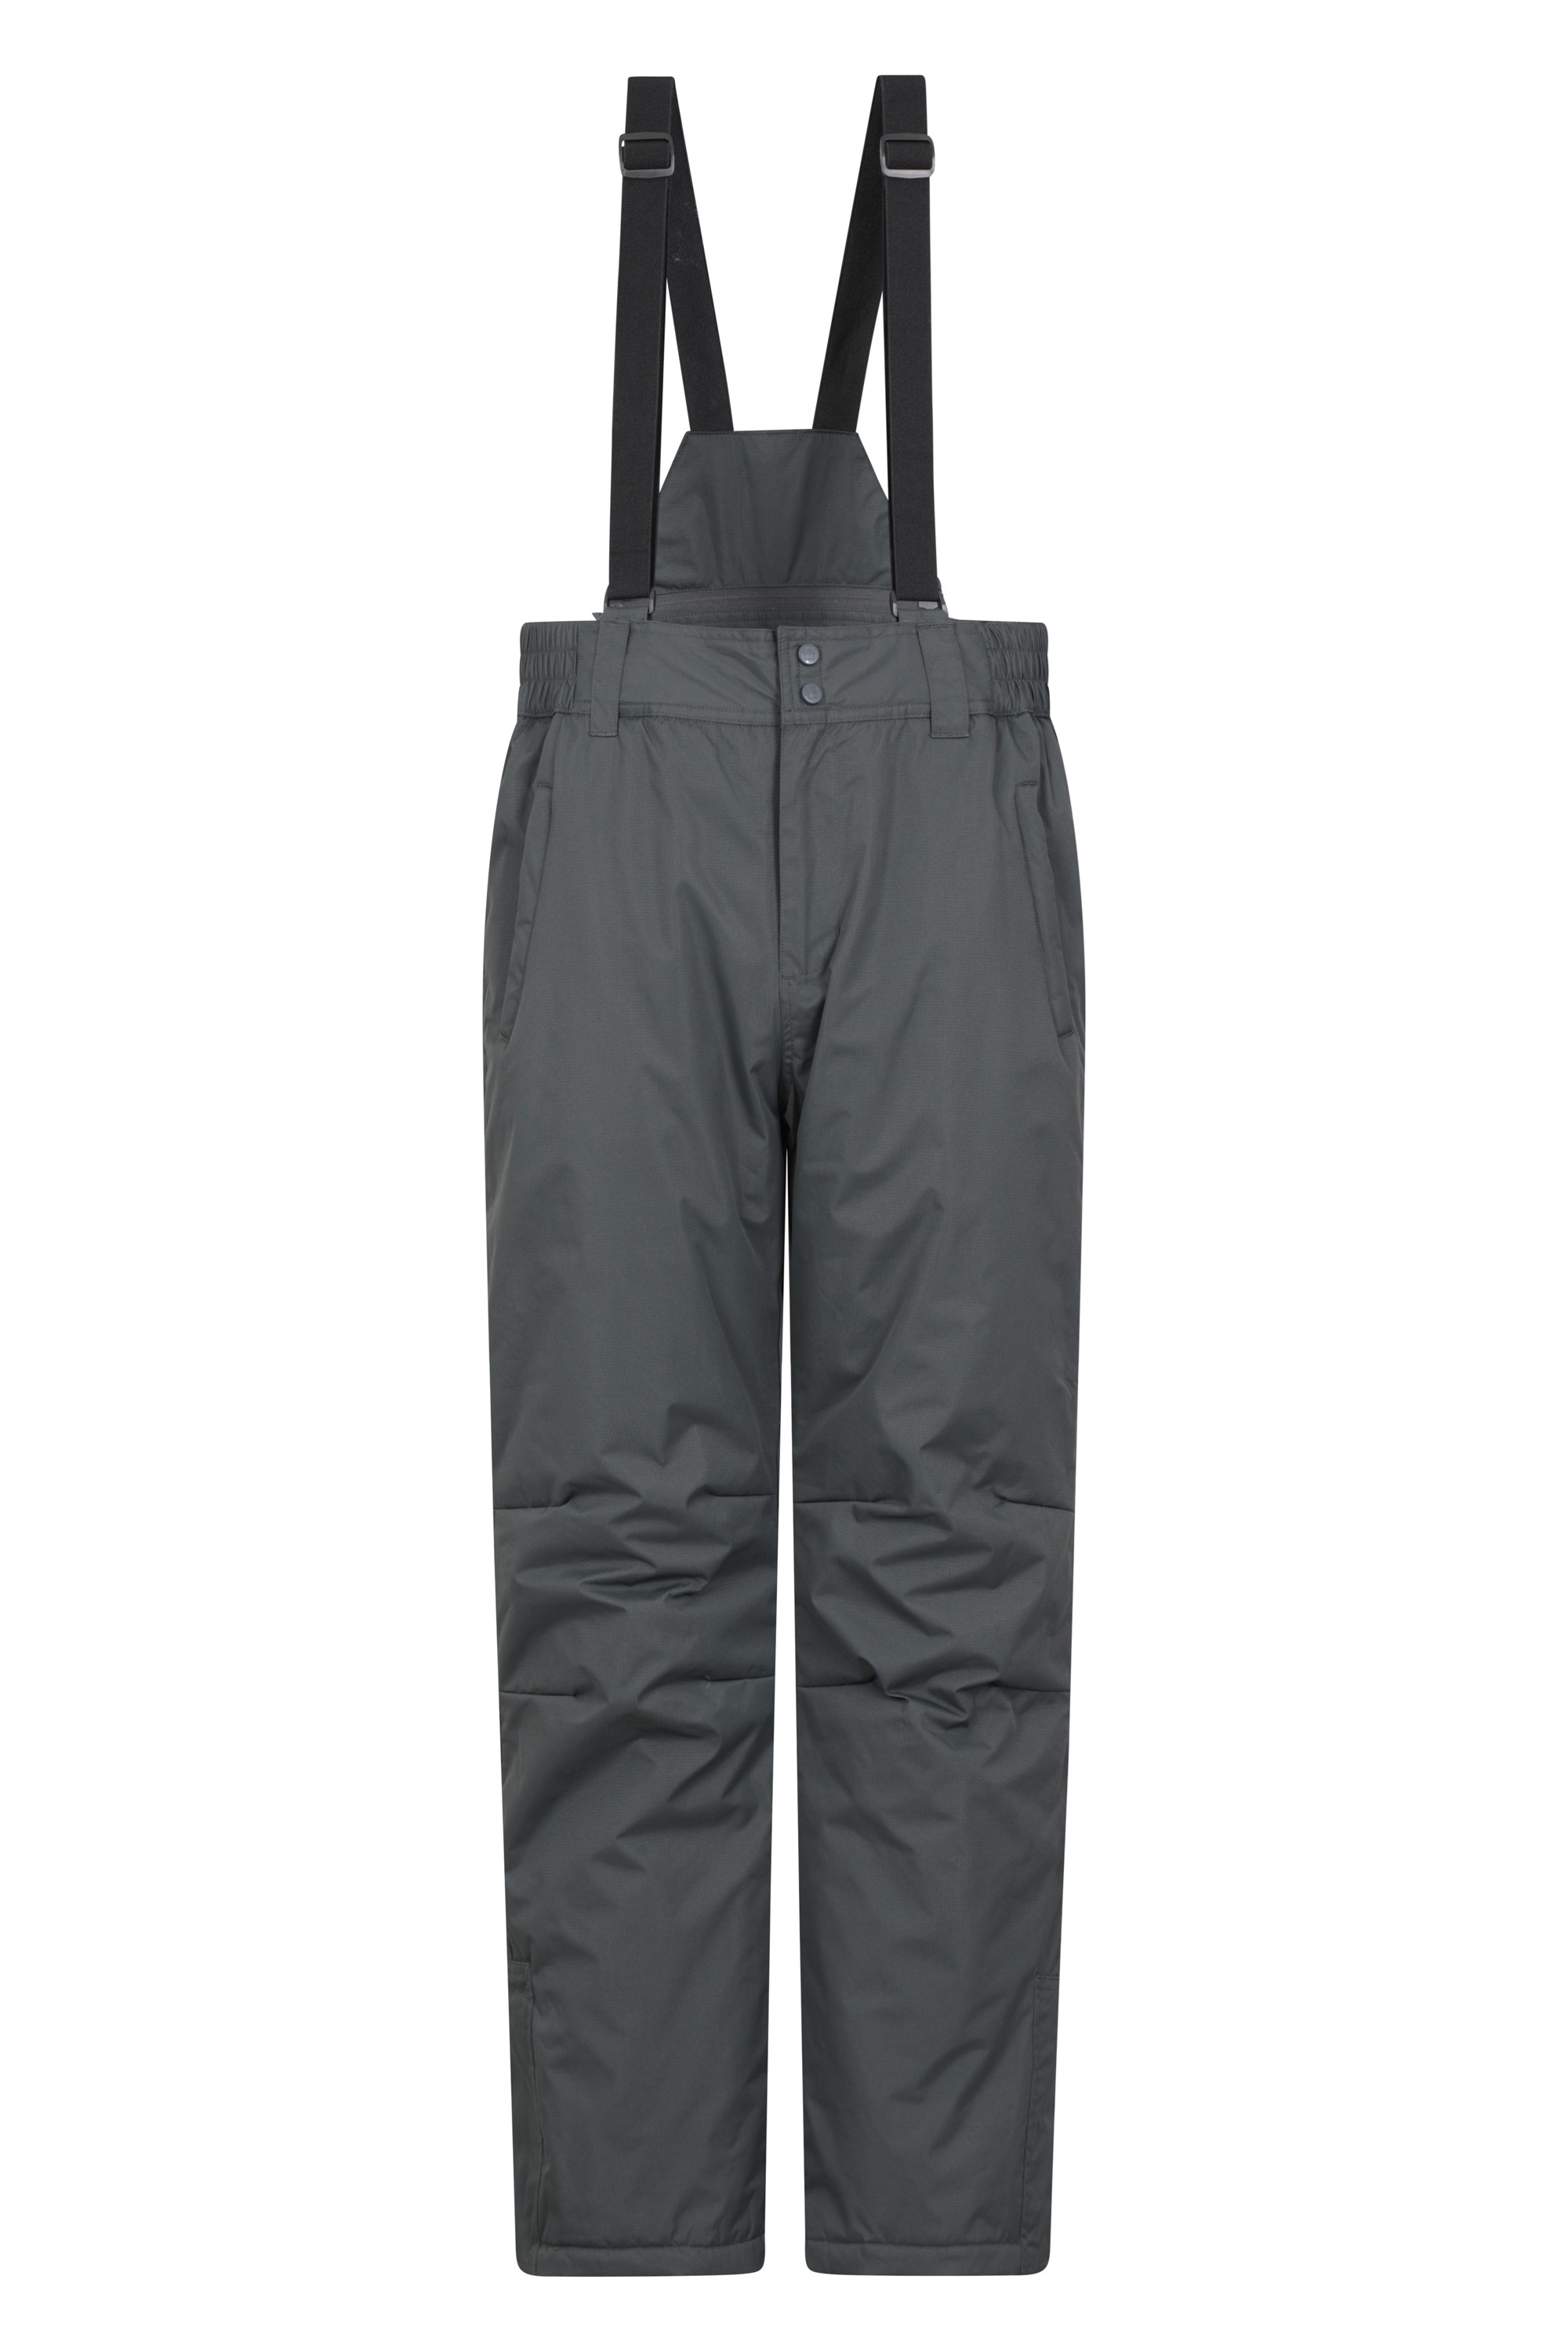 Dusk Mens Ski Pants - Short Length - Grey